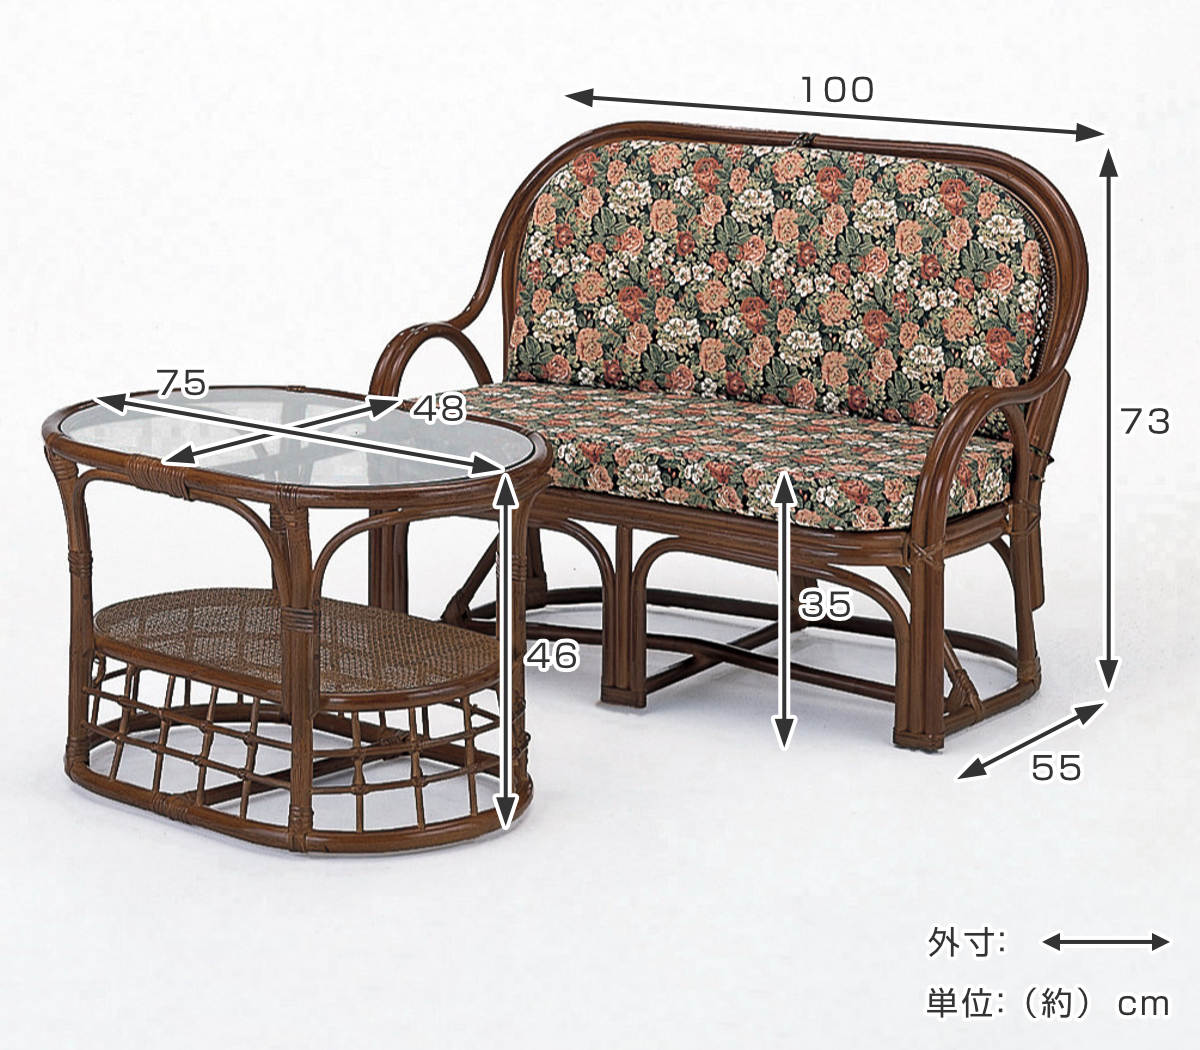 ブルー応接セット籐製品リビングチェアー&テーブルセット - 奈良県の家具